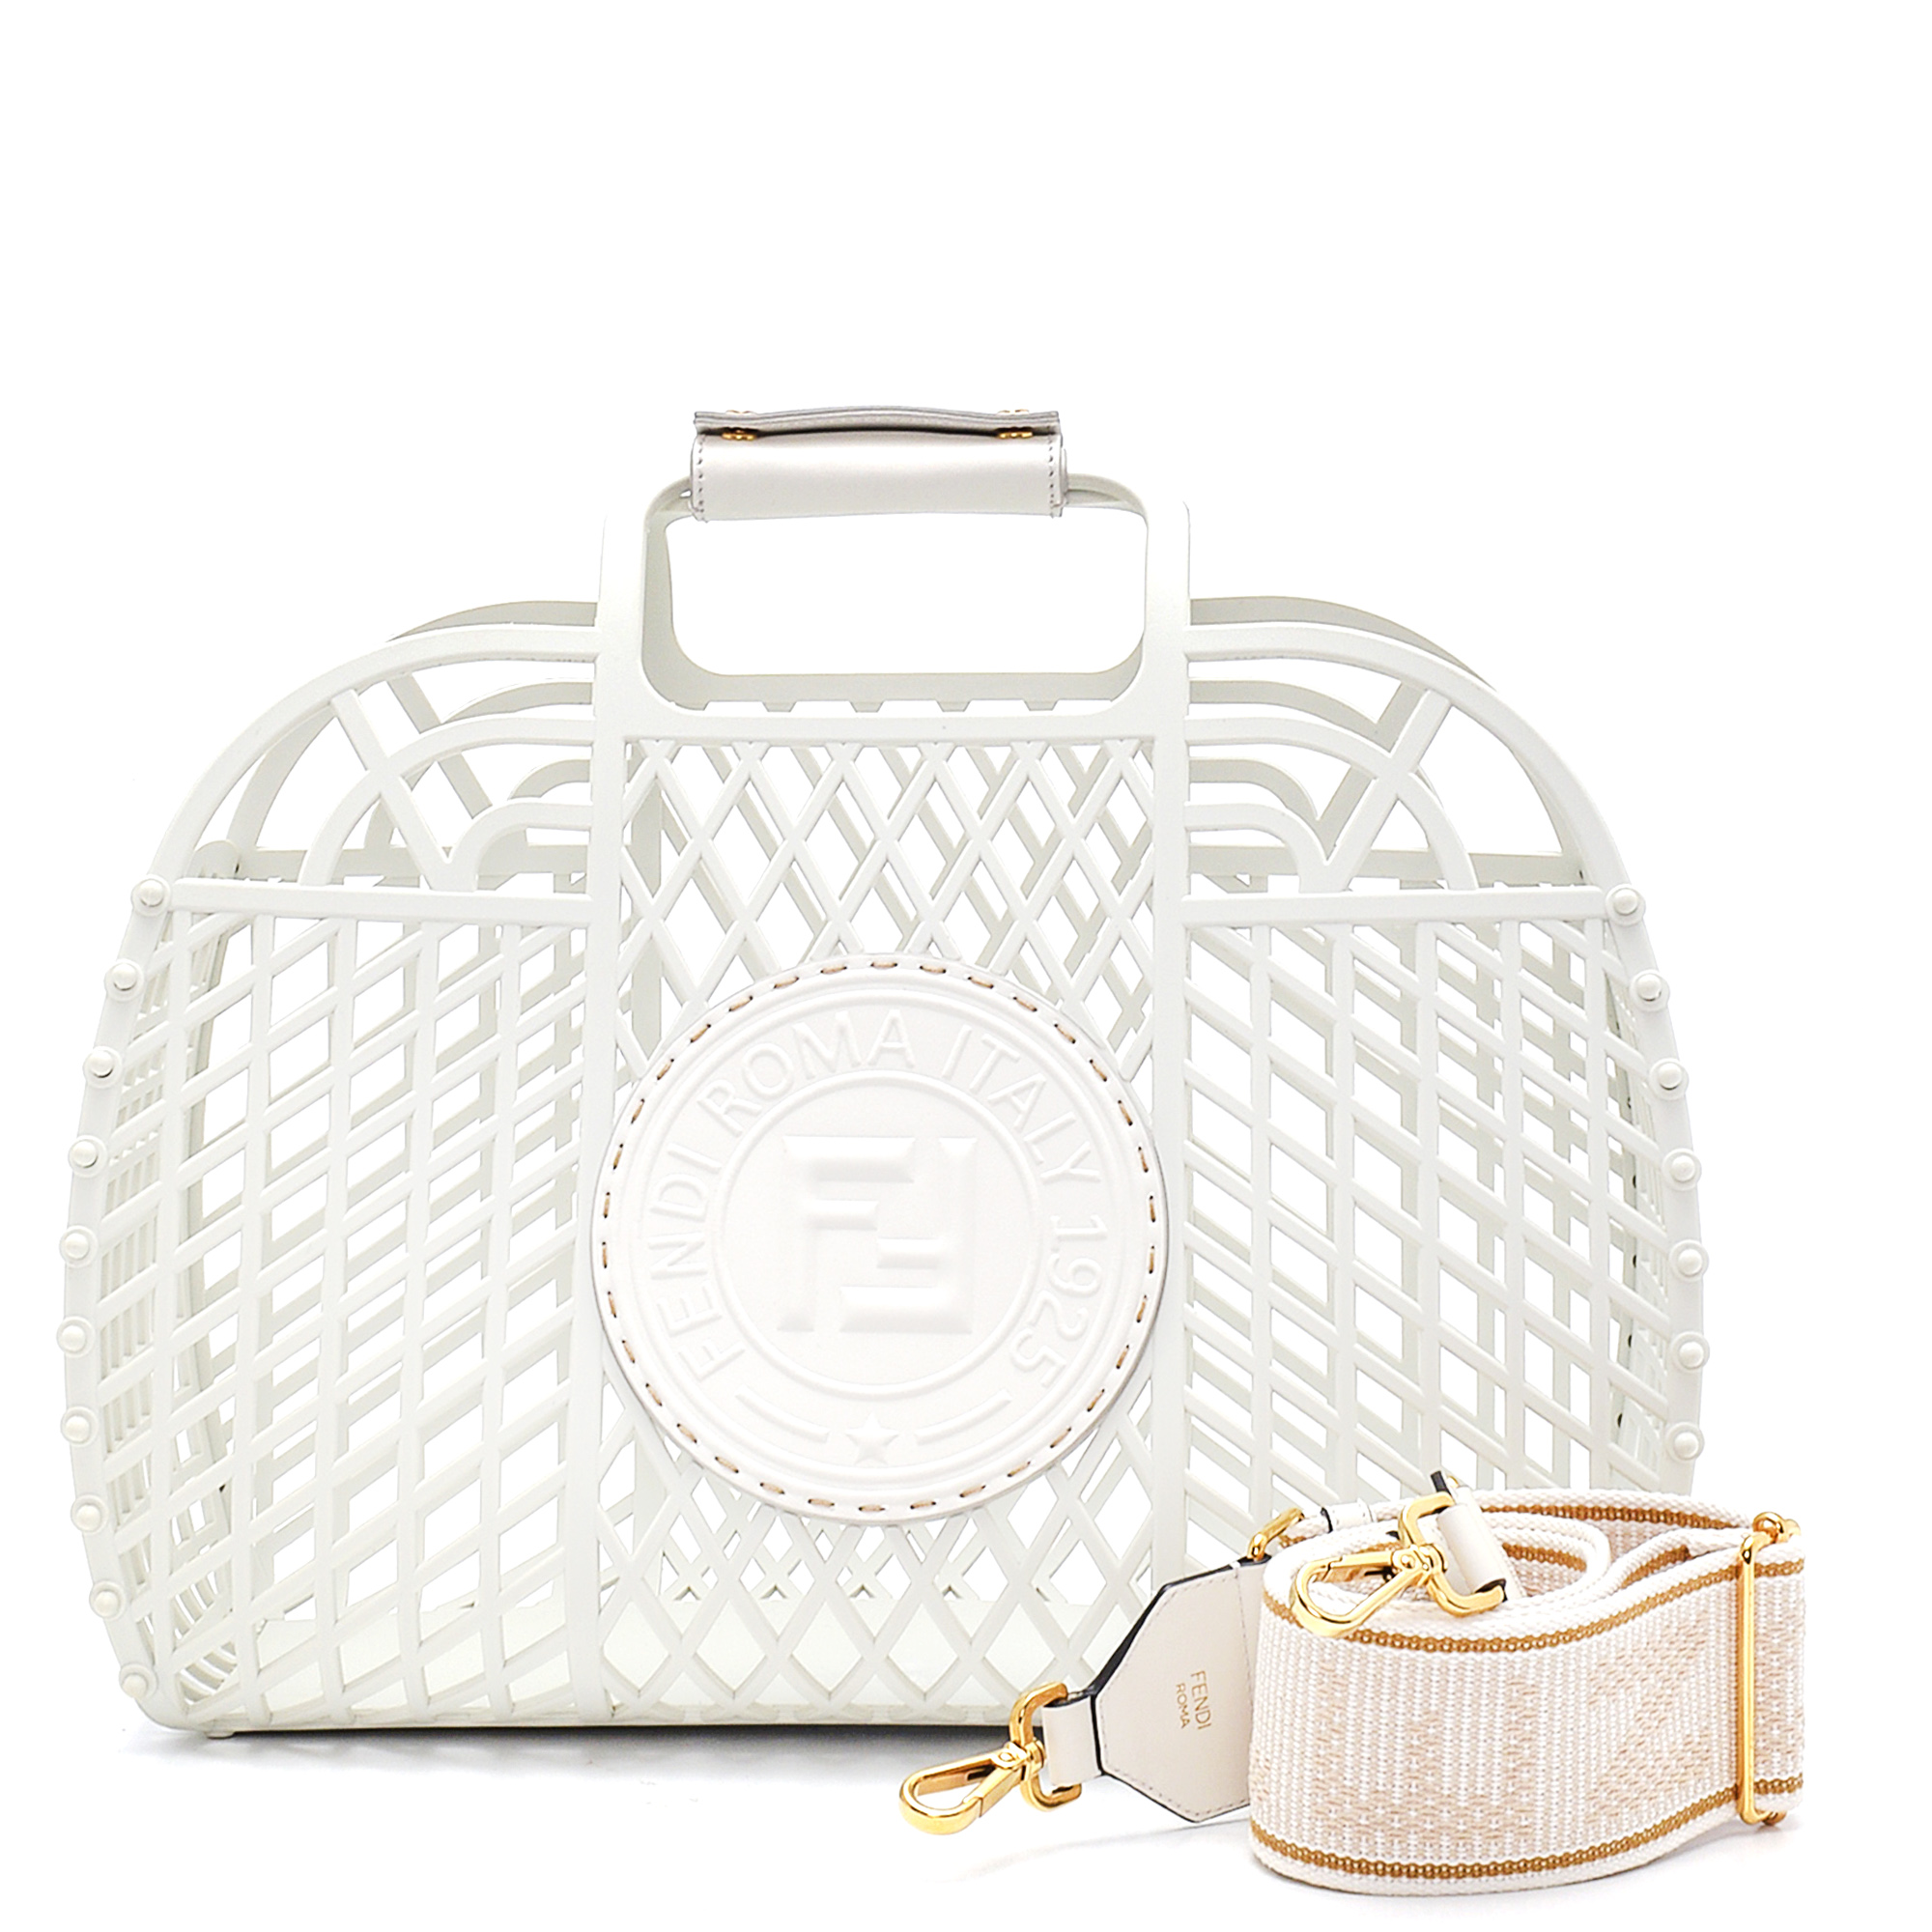 Fendi - White Recycled PVC Basket Handbag